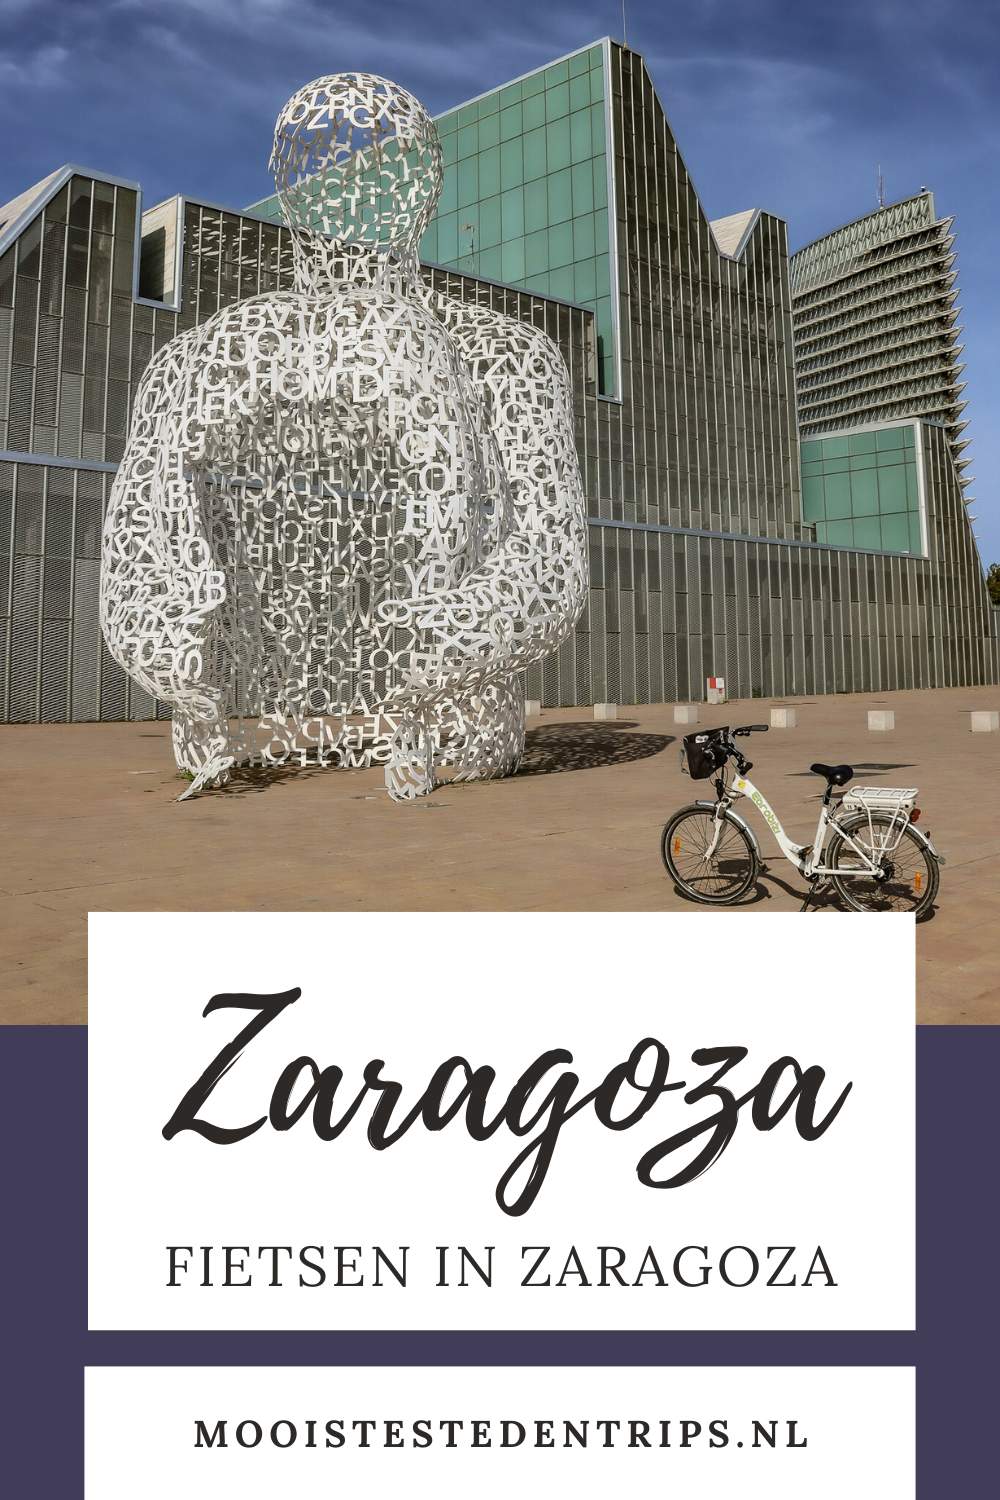 Fietsen in Zaragoza (Baja Bikes Zaragoza): maak een mooie fietstocht in Zaragoza | Mooistestedentrips.nl